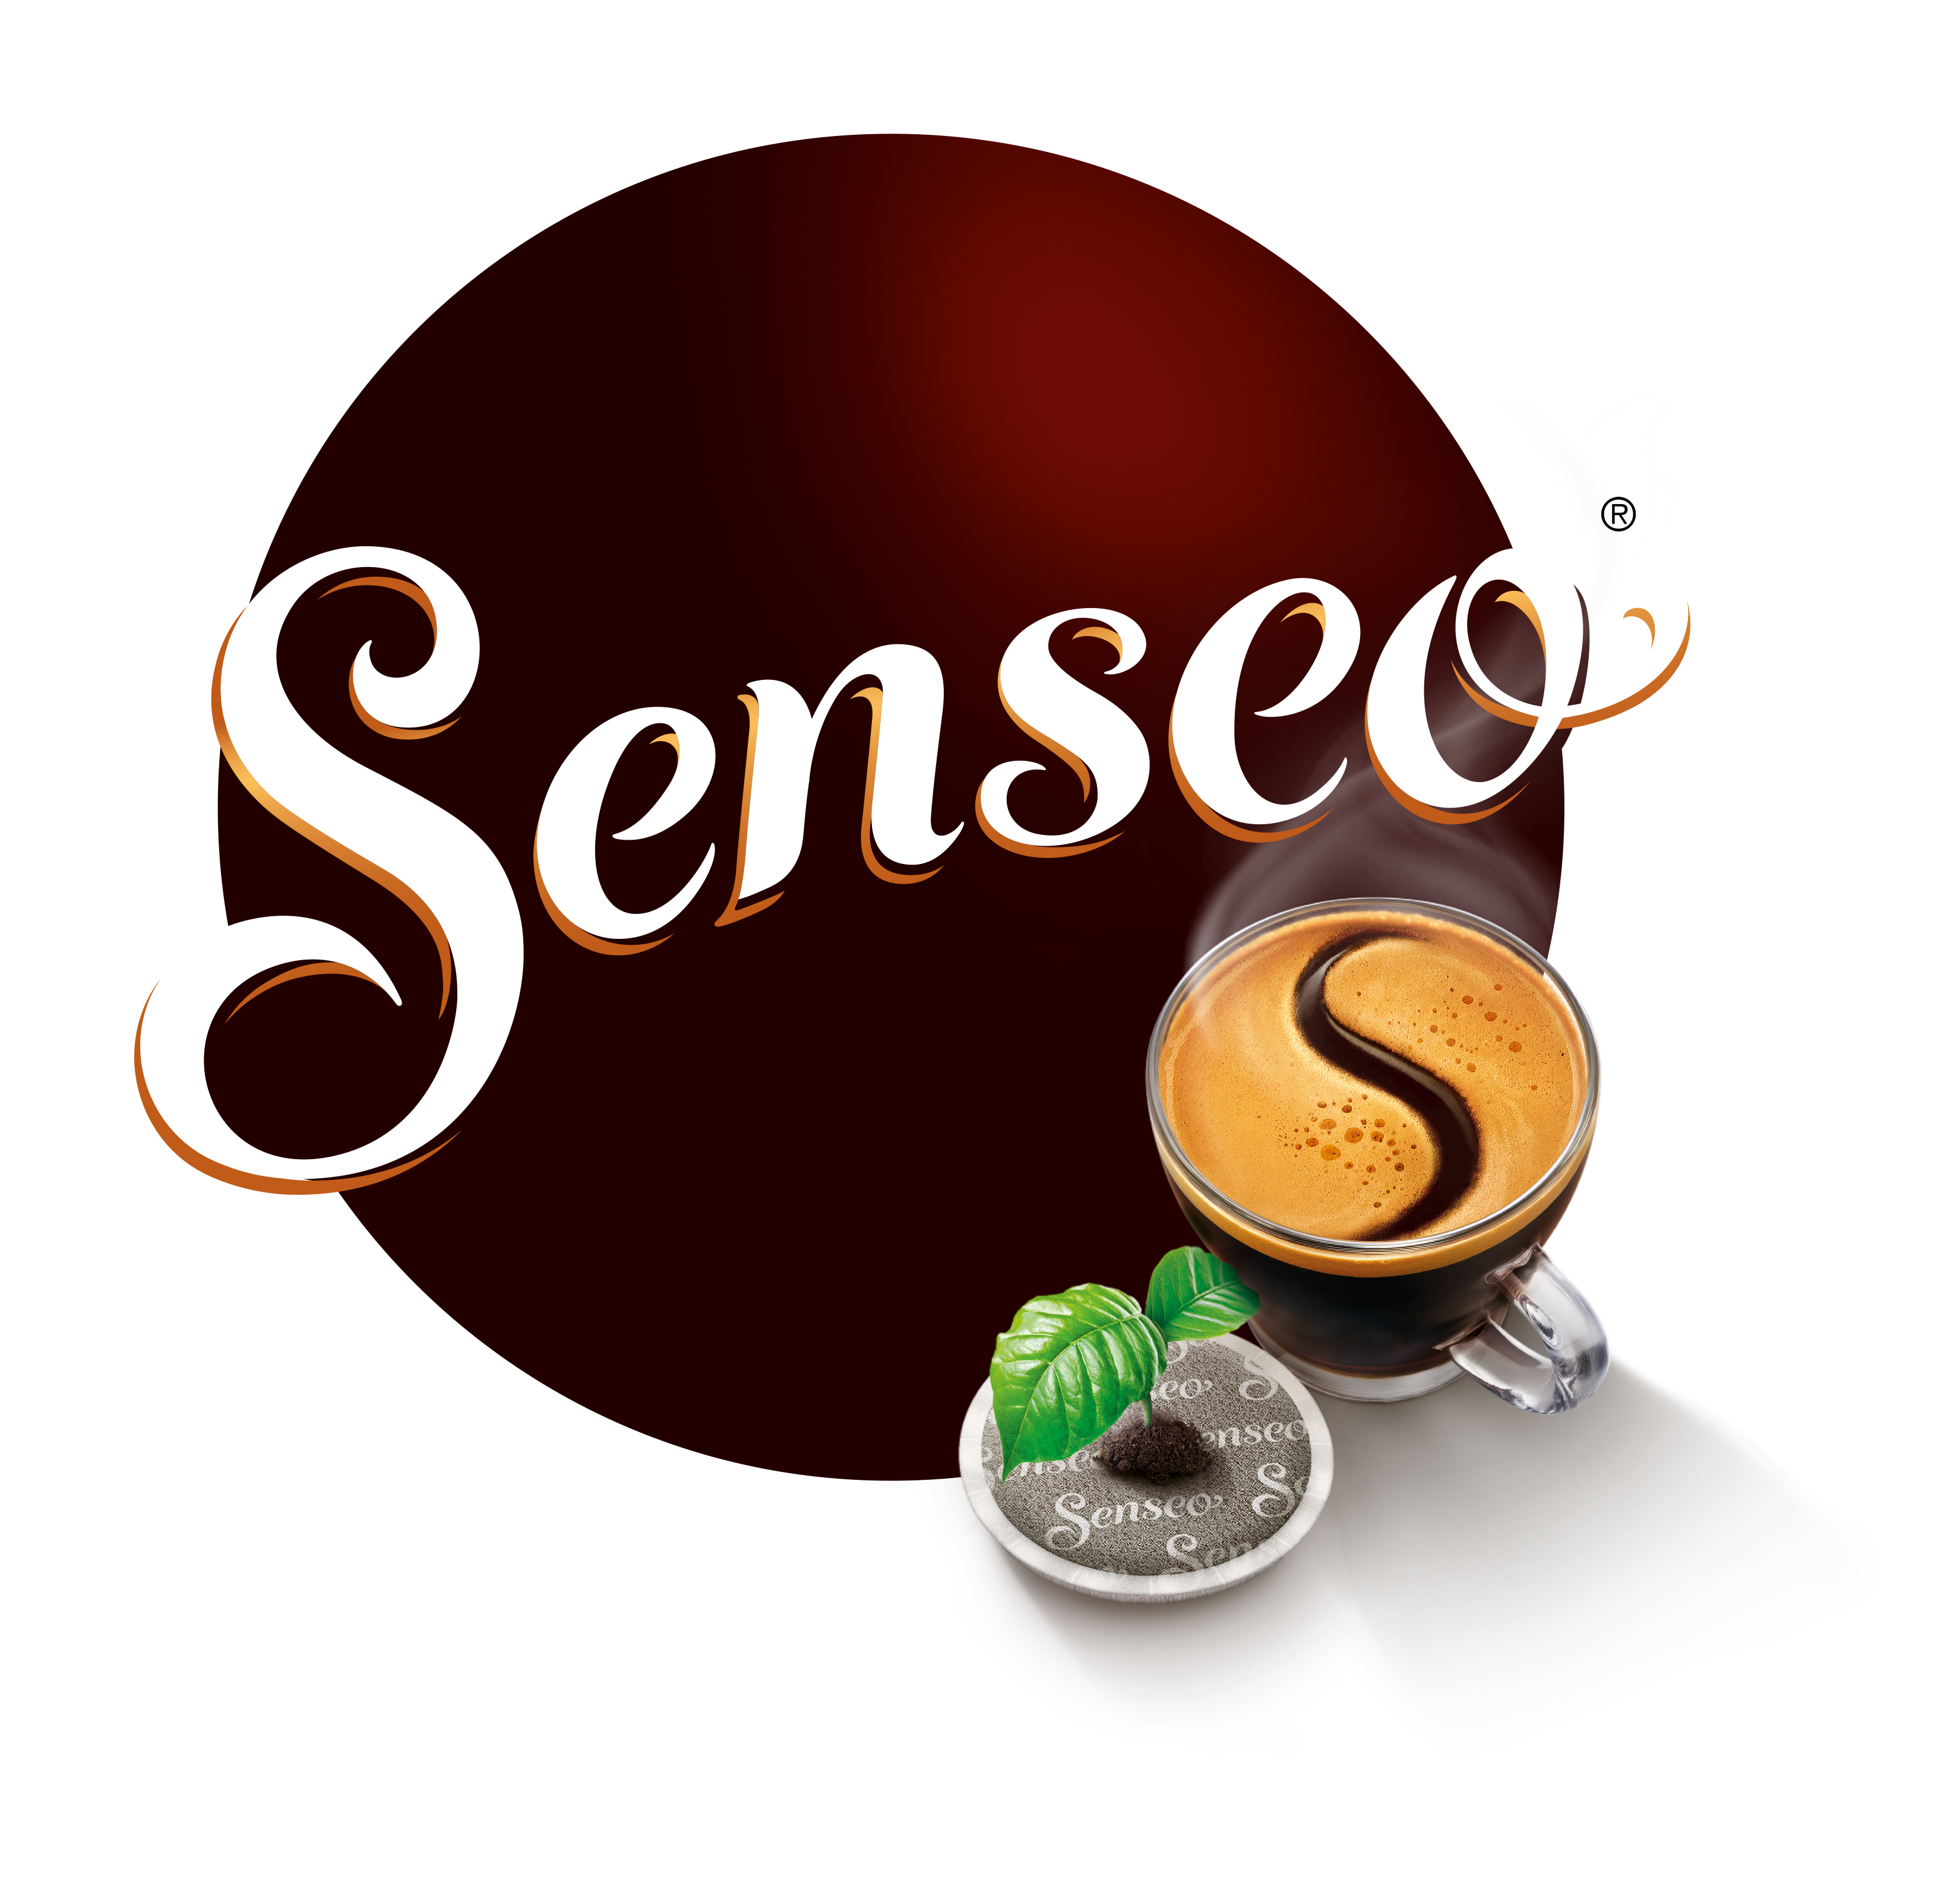 Sotel  Senseo CA6522/01 pièce et accessoire de machine à café Kit